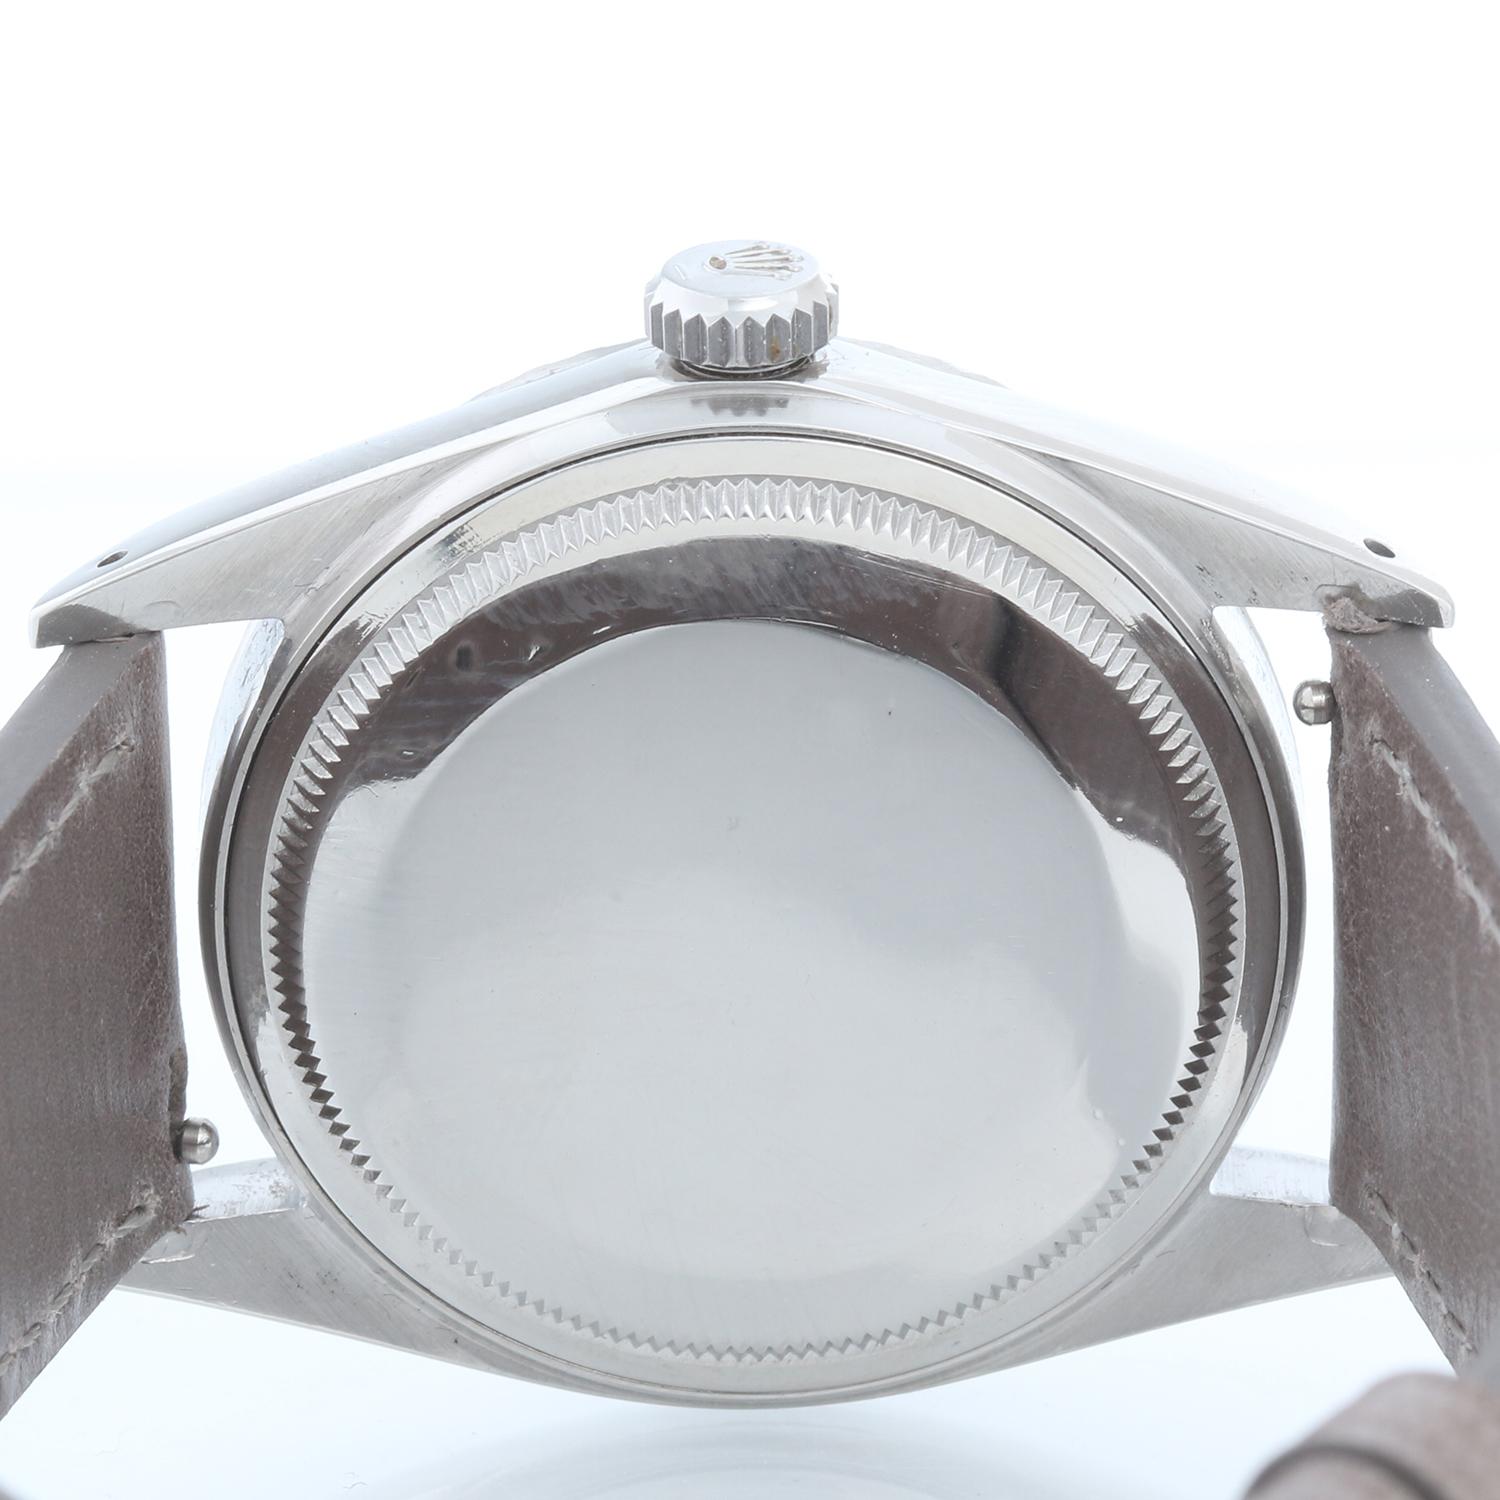 Vintage Rolex Datejust Automatic Men's Watch 1603 1